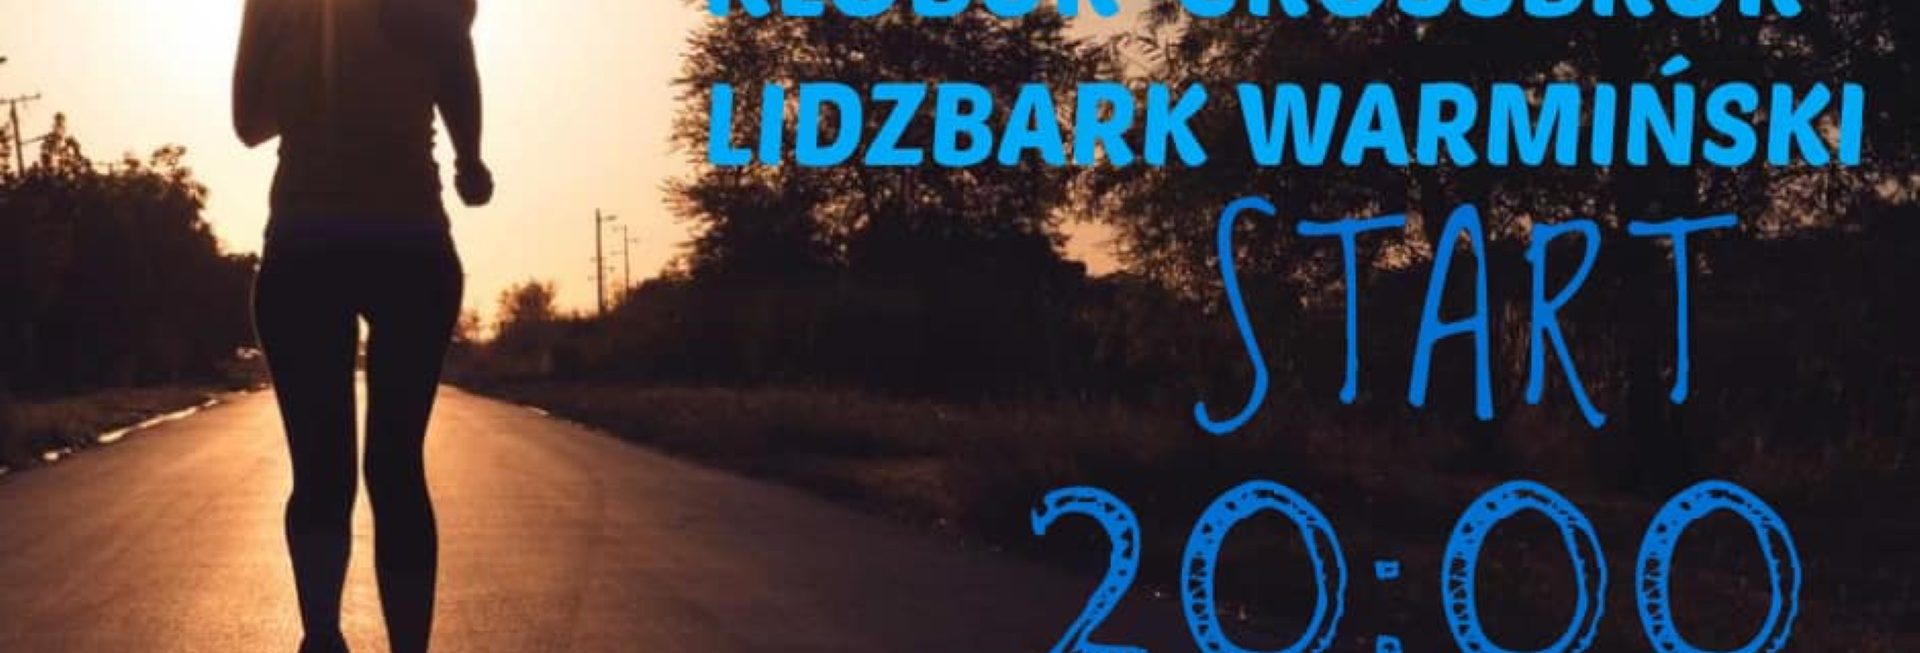 Plakat zapraszający do Lidzbarka Warmińskiego na Nocny Bieg KŁOBUK-CROSSBRUK Lidzbark Warmiński 2022.